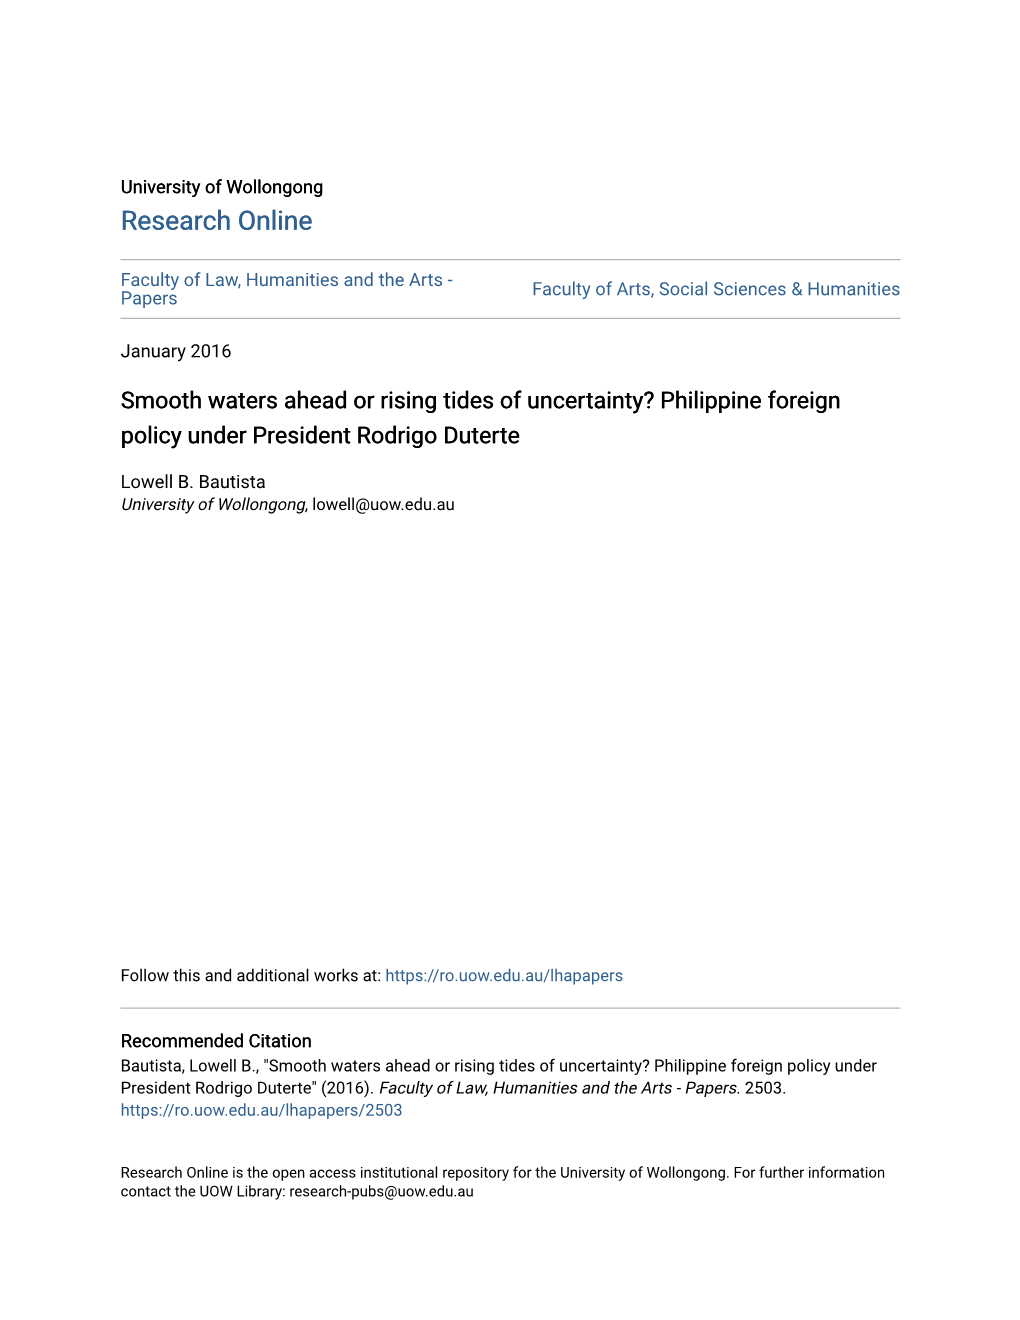 Philippine Foreign Policy Under President Rodrigo Duterte